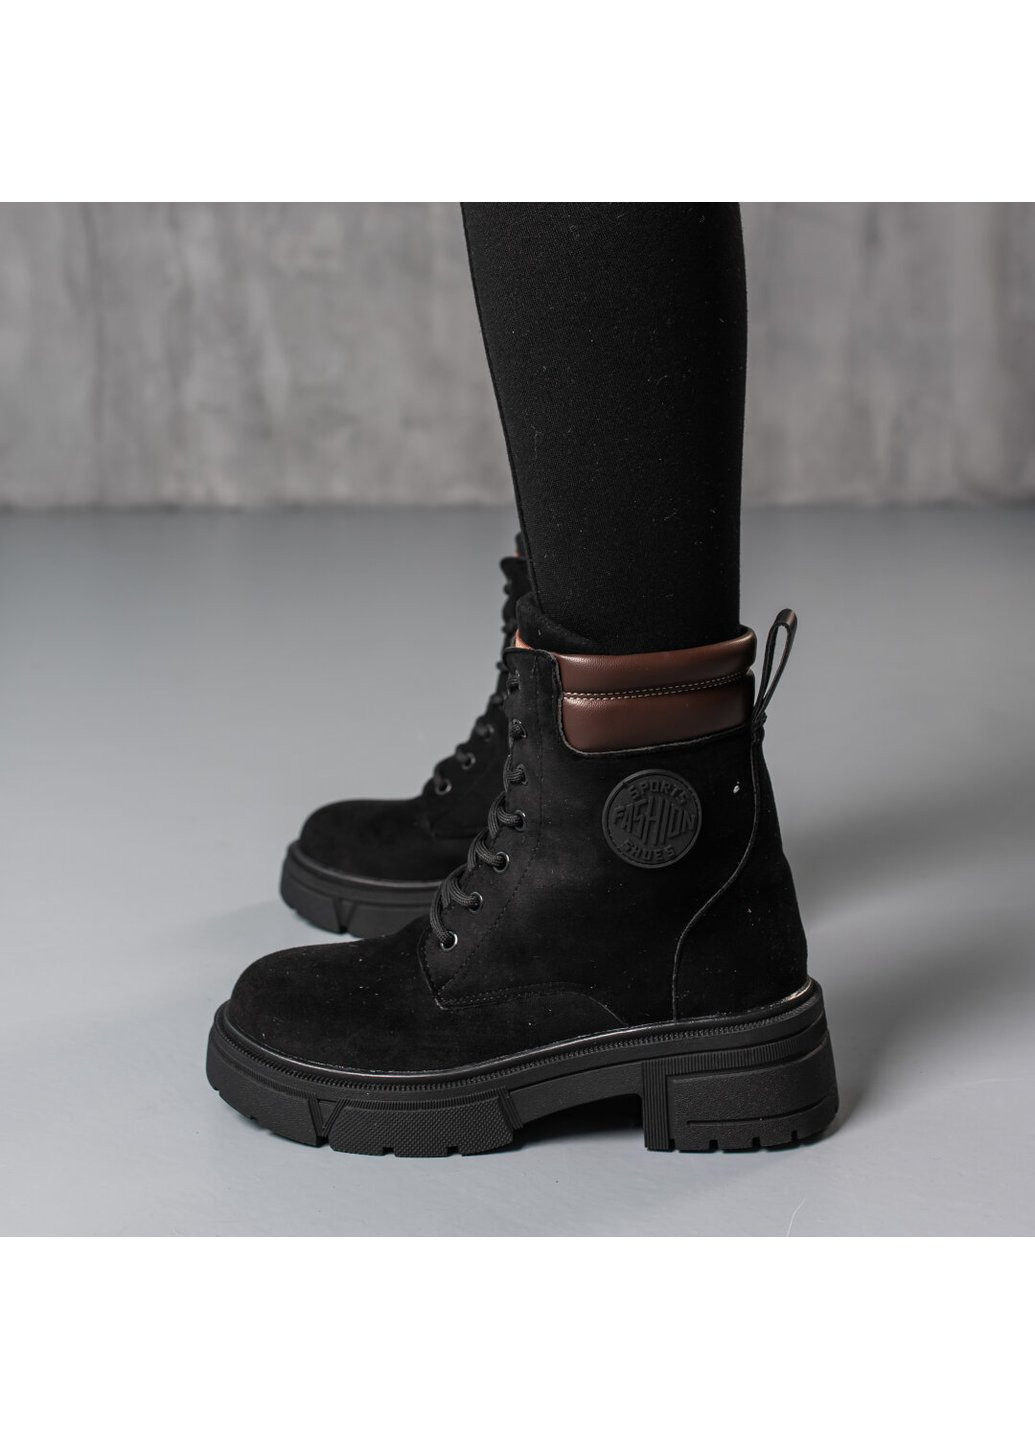 Зимние ботинки женские зимние zsa 3804 235 черный Fashion из искусственной замши